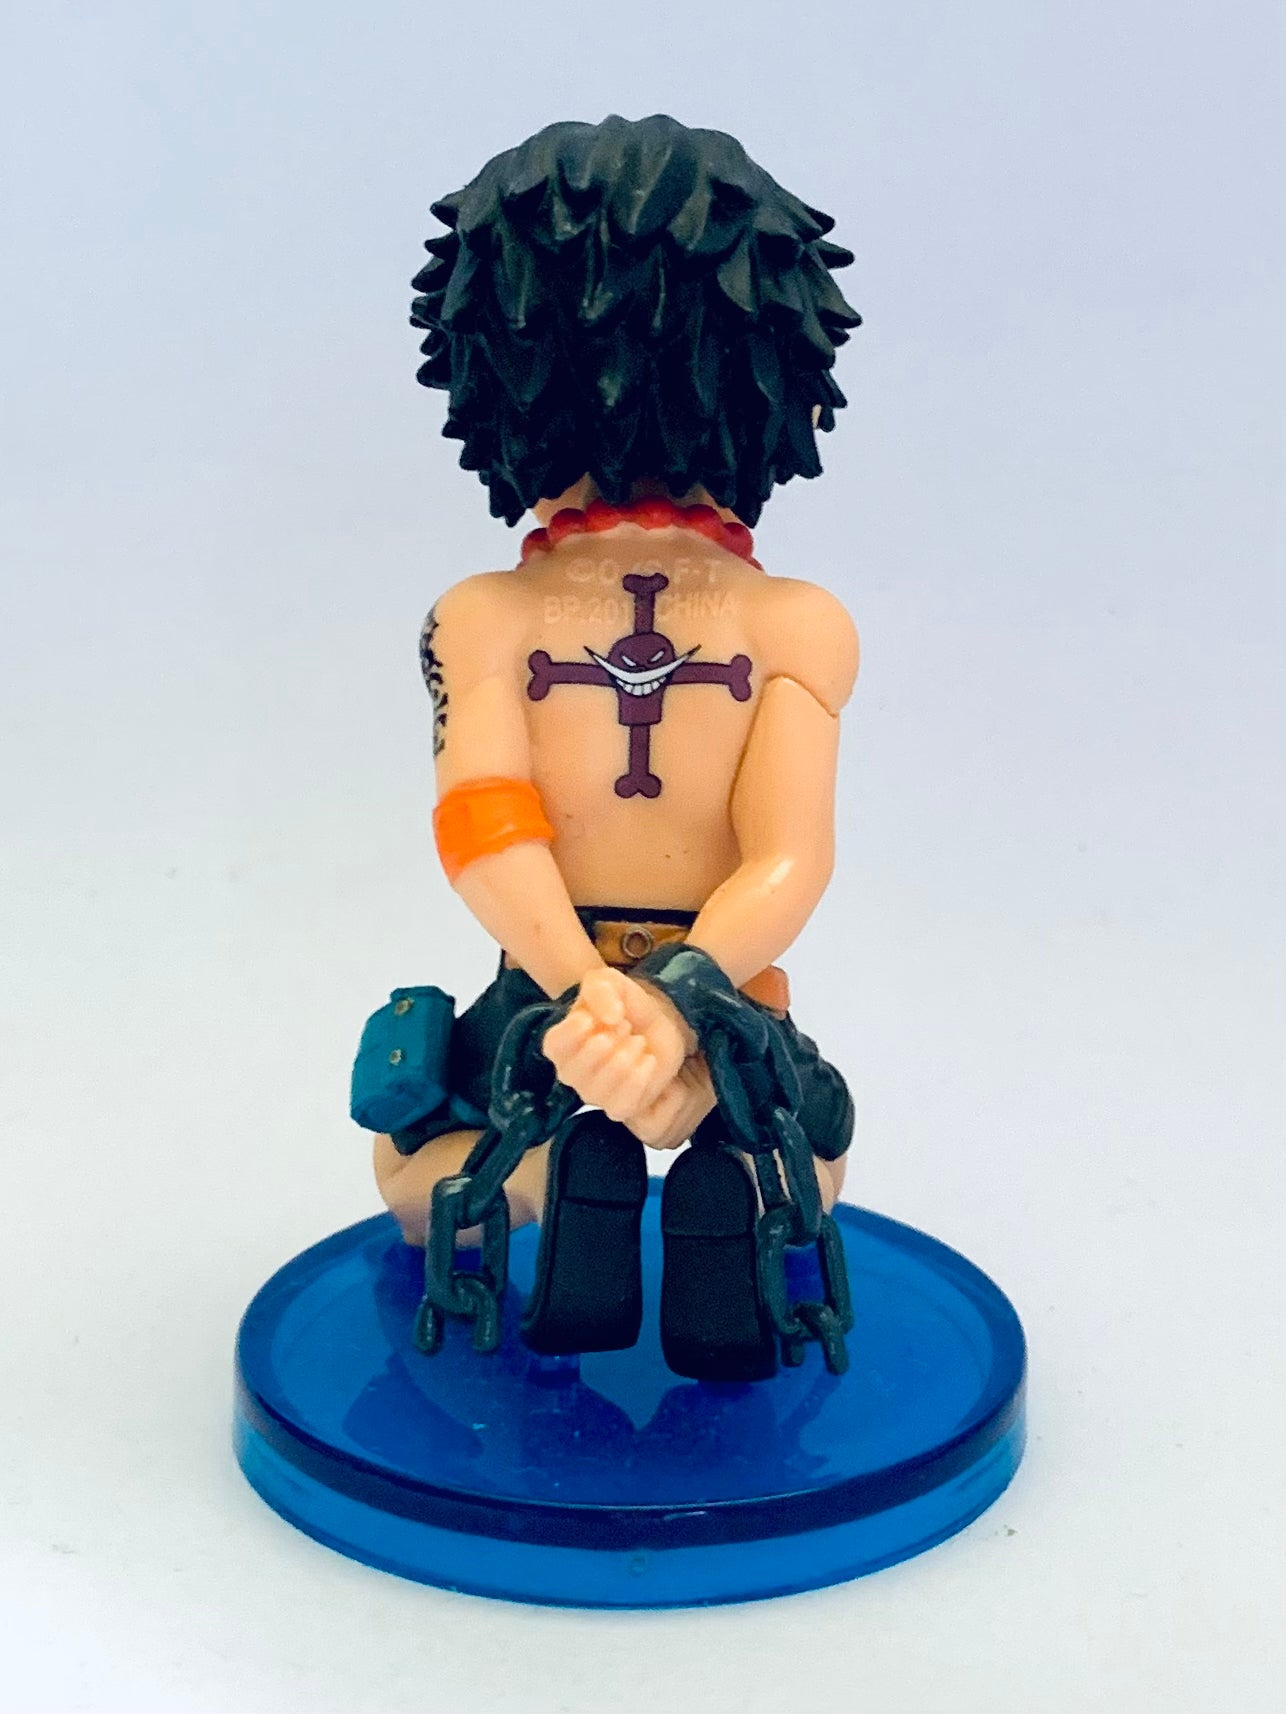 Figure One Piece World Collectable - Burst - Portgas D. Ace em